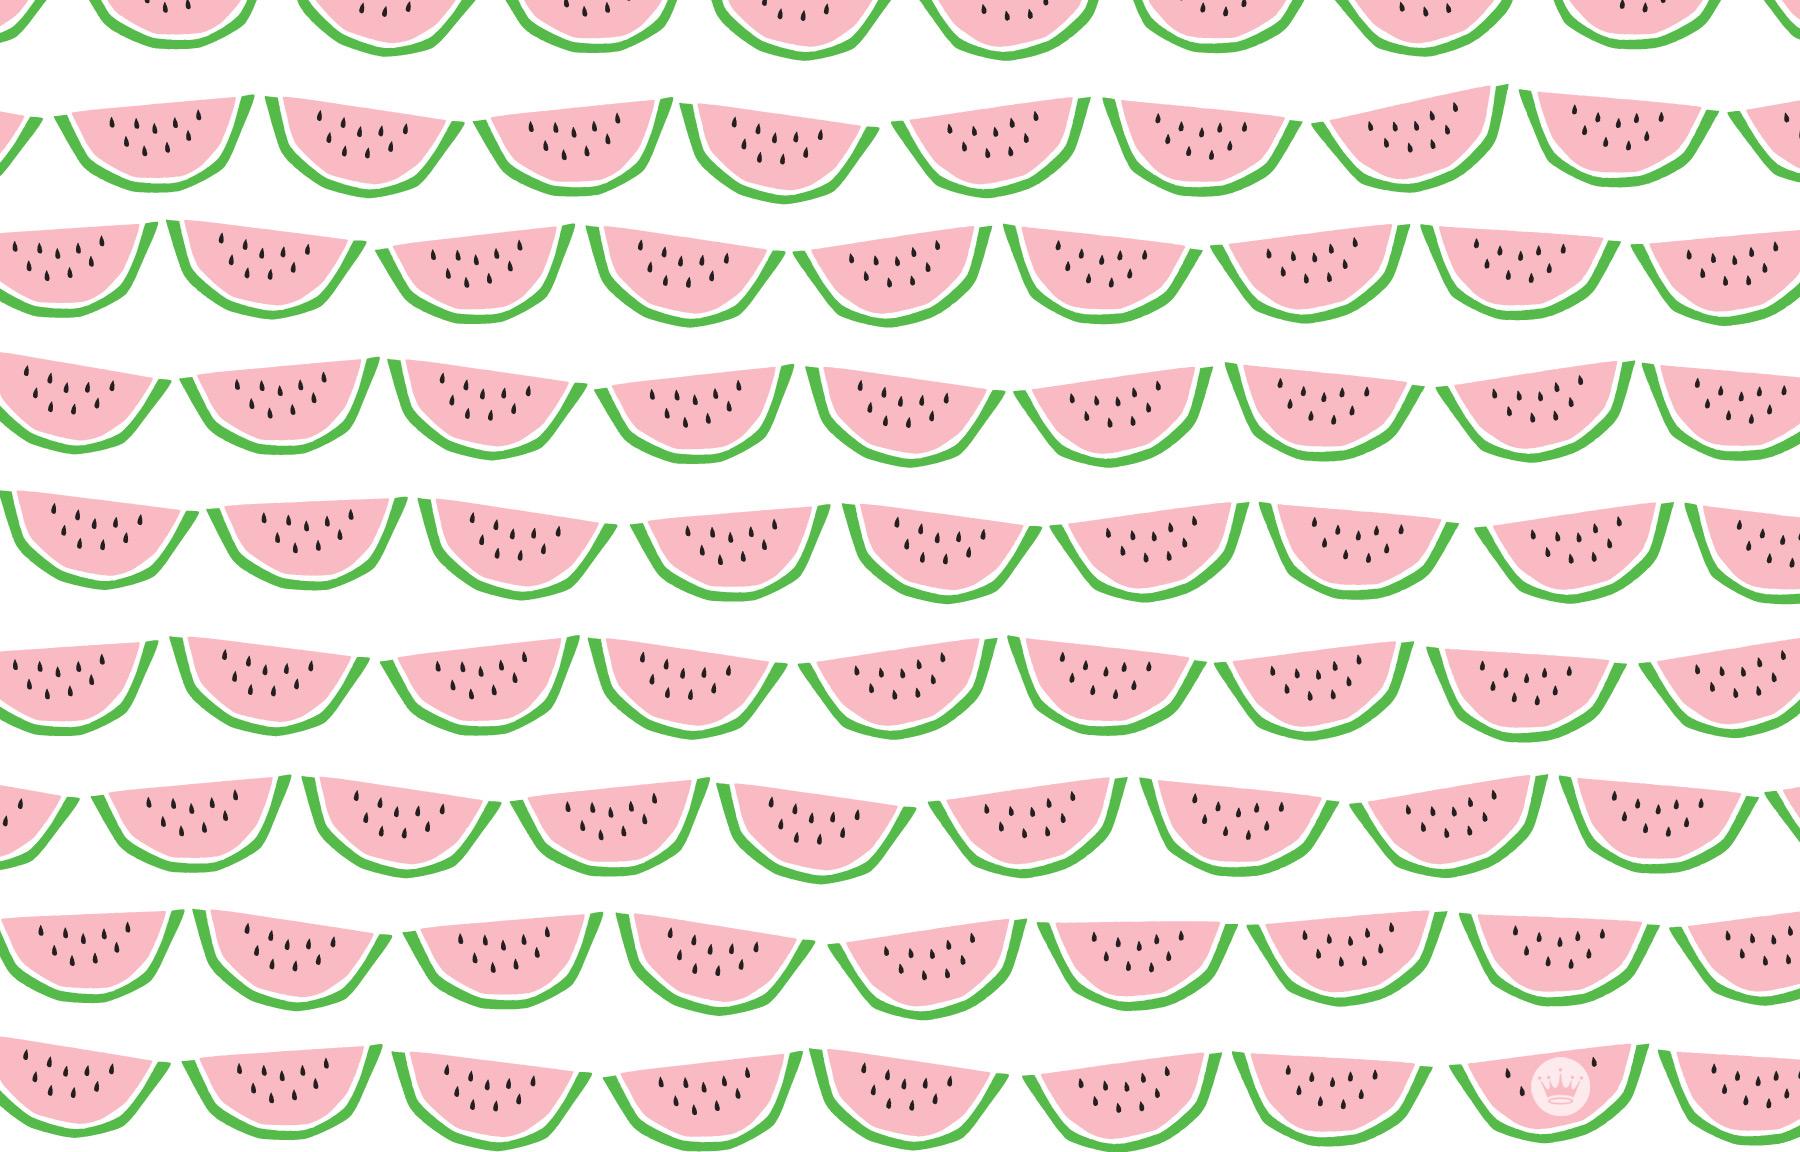 Watermelon seamless pattern by katiebear on spoonflower - MacBook